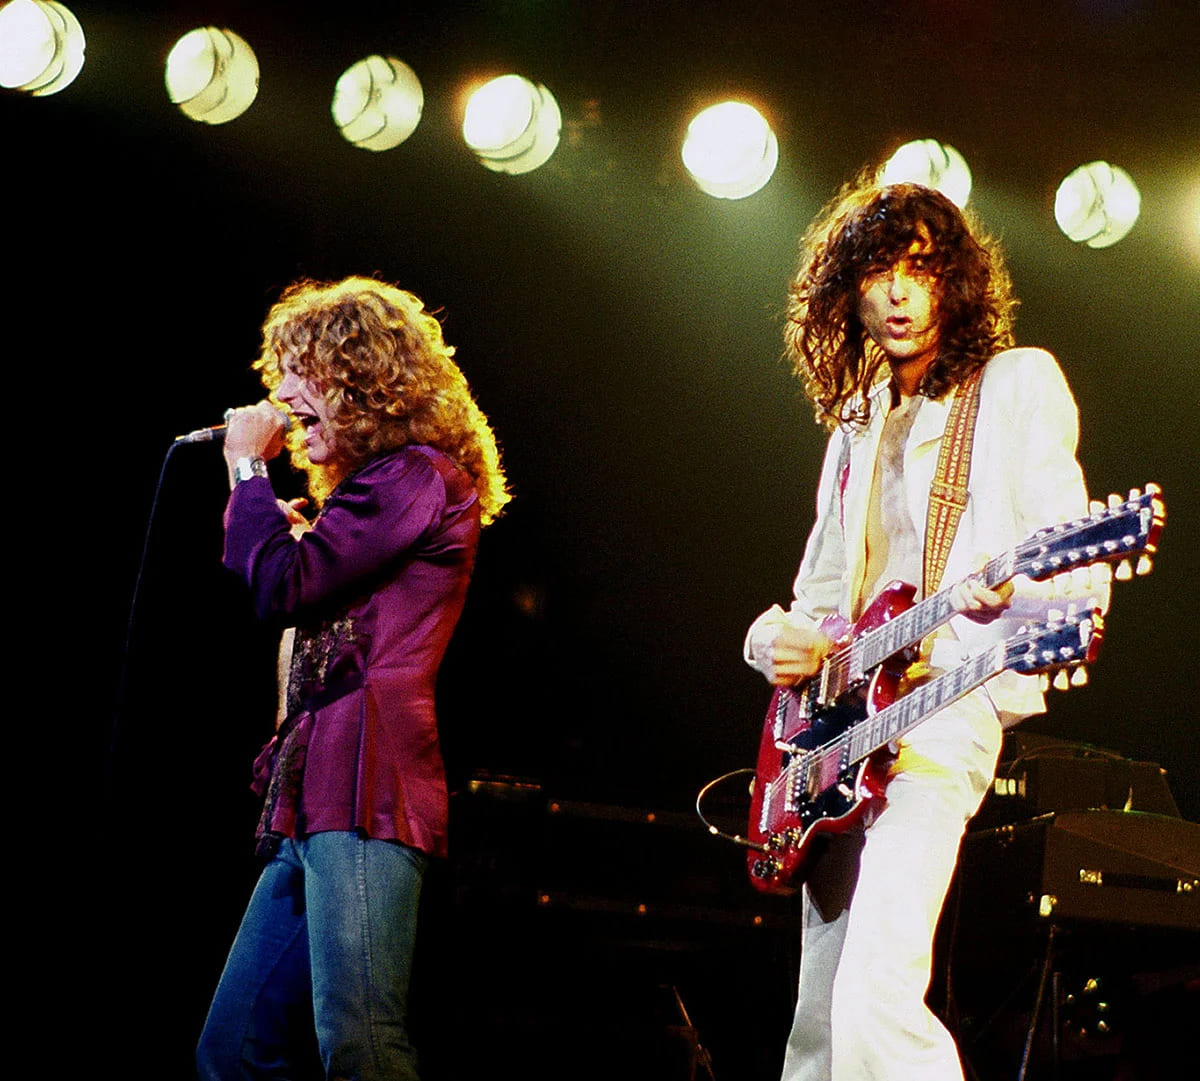 Robert Plant (esquerda) e Jimmy Page (direita), de Led Zeppelin, em um concerto em Chicago, Illinois. Foto: Jim Sammaria